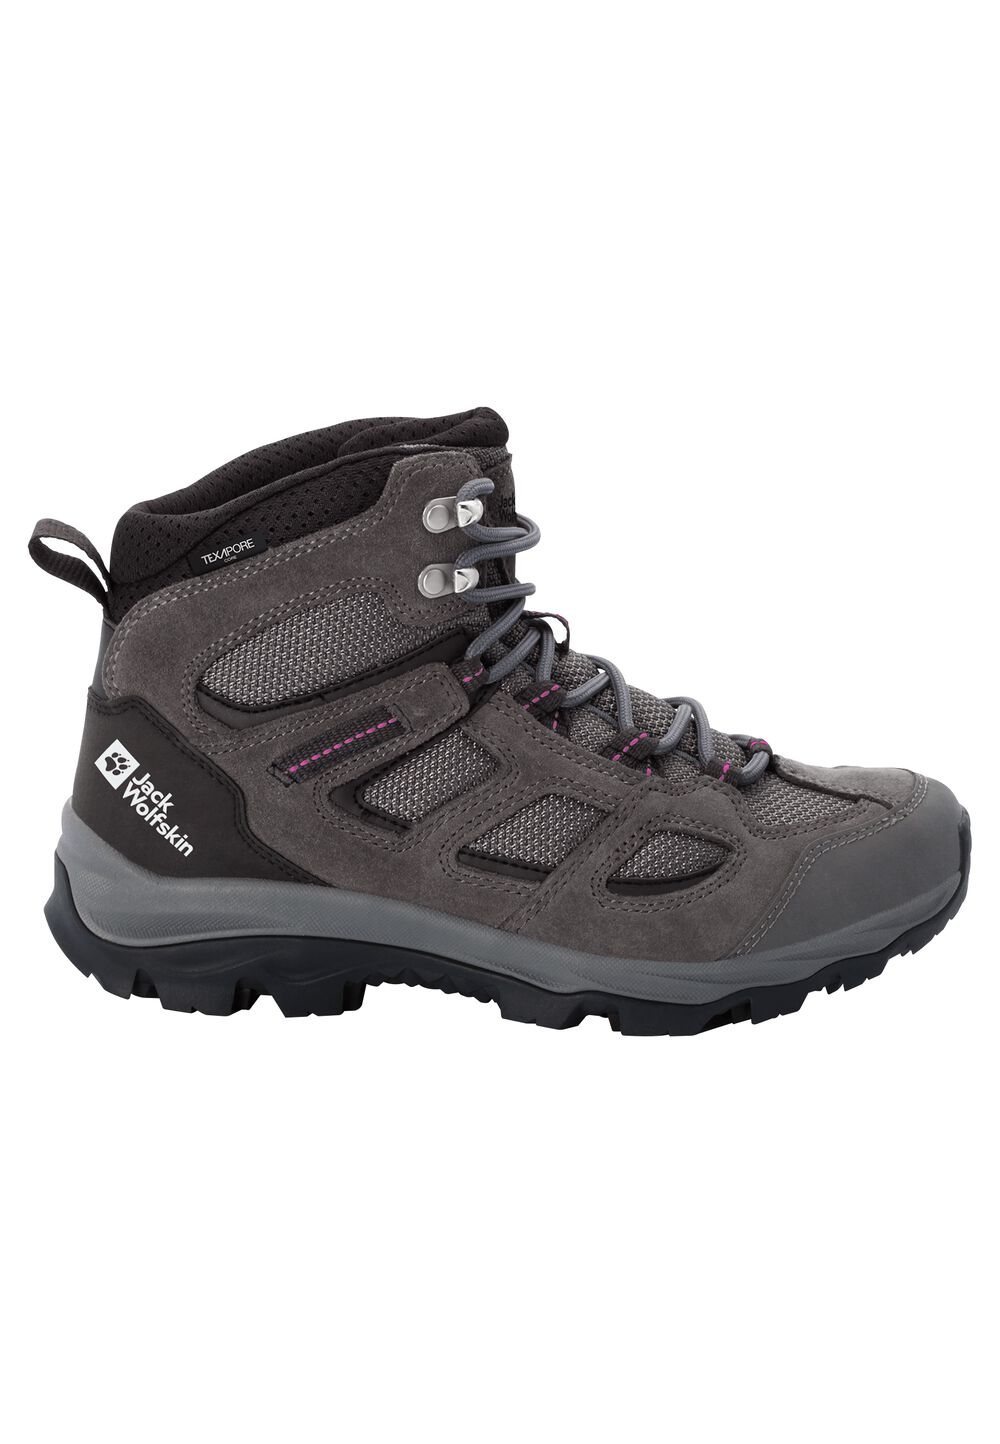 Chaussures de randonnée imperméables femmes Vojo 3 Texapore Mid Women 9 gris tarmac grey / pink